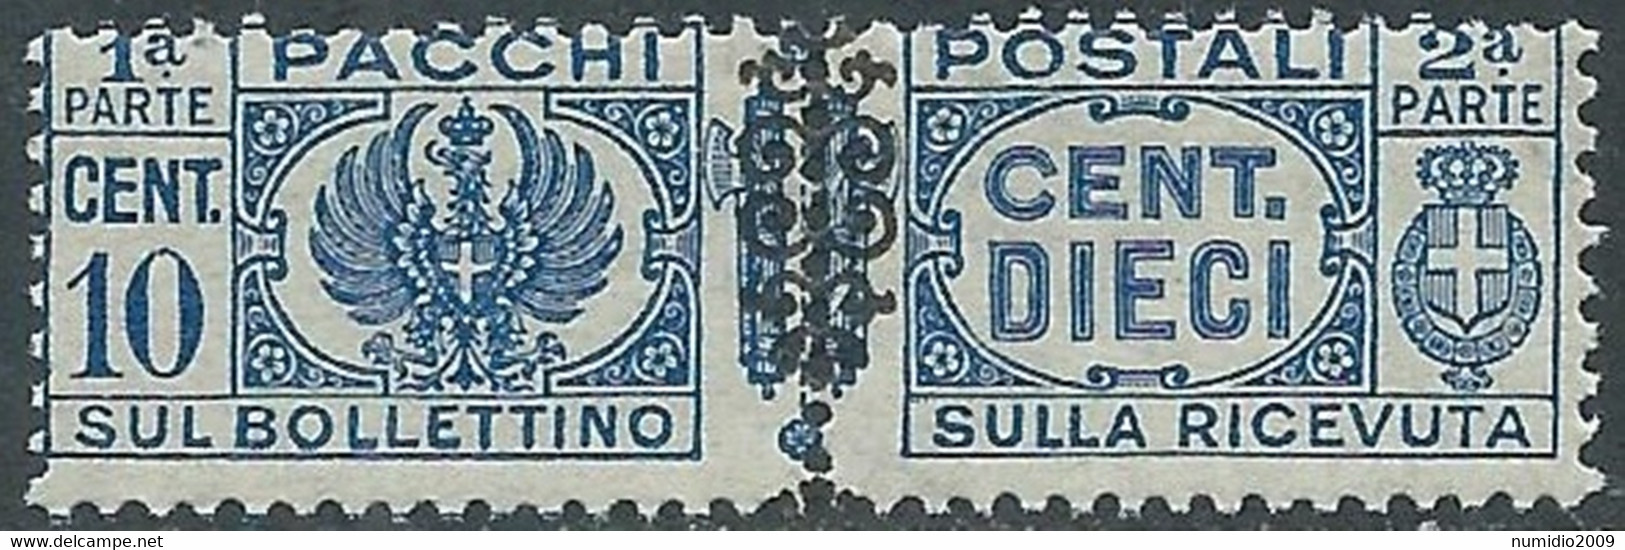 1945 LUOGOTENENZA PACCHI POSTALI 10 CENT MNH ** - CZ19-5 - Paketmarken